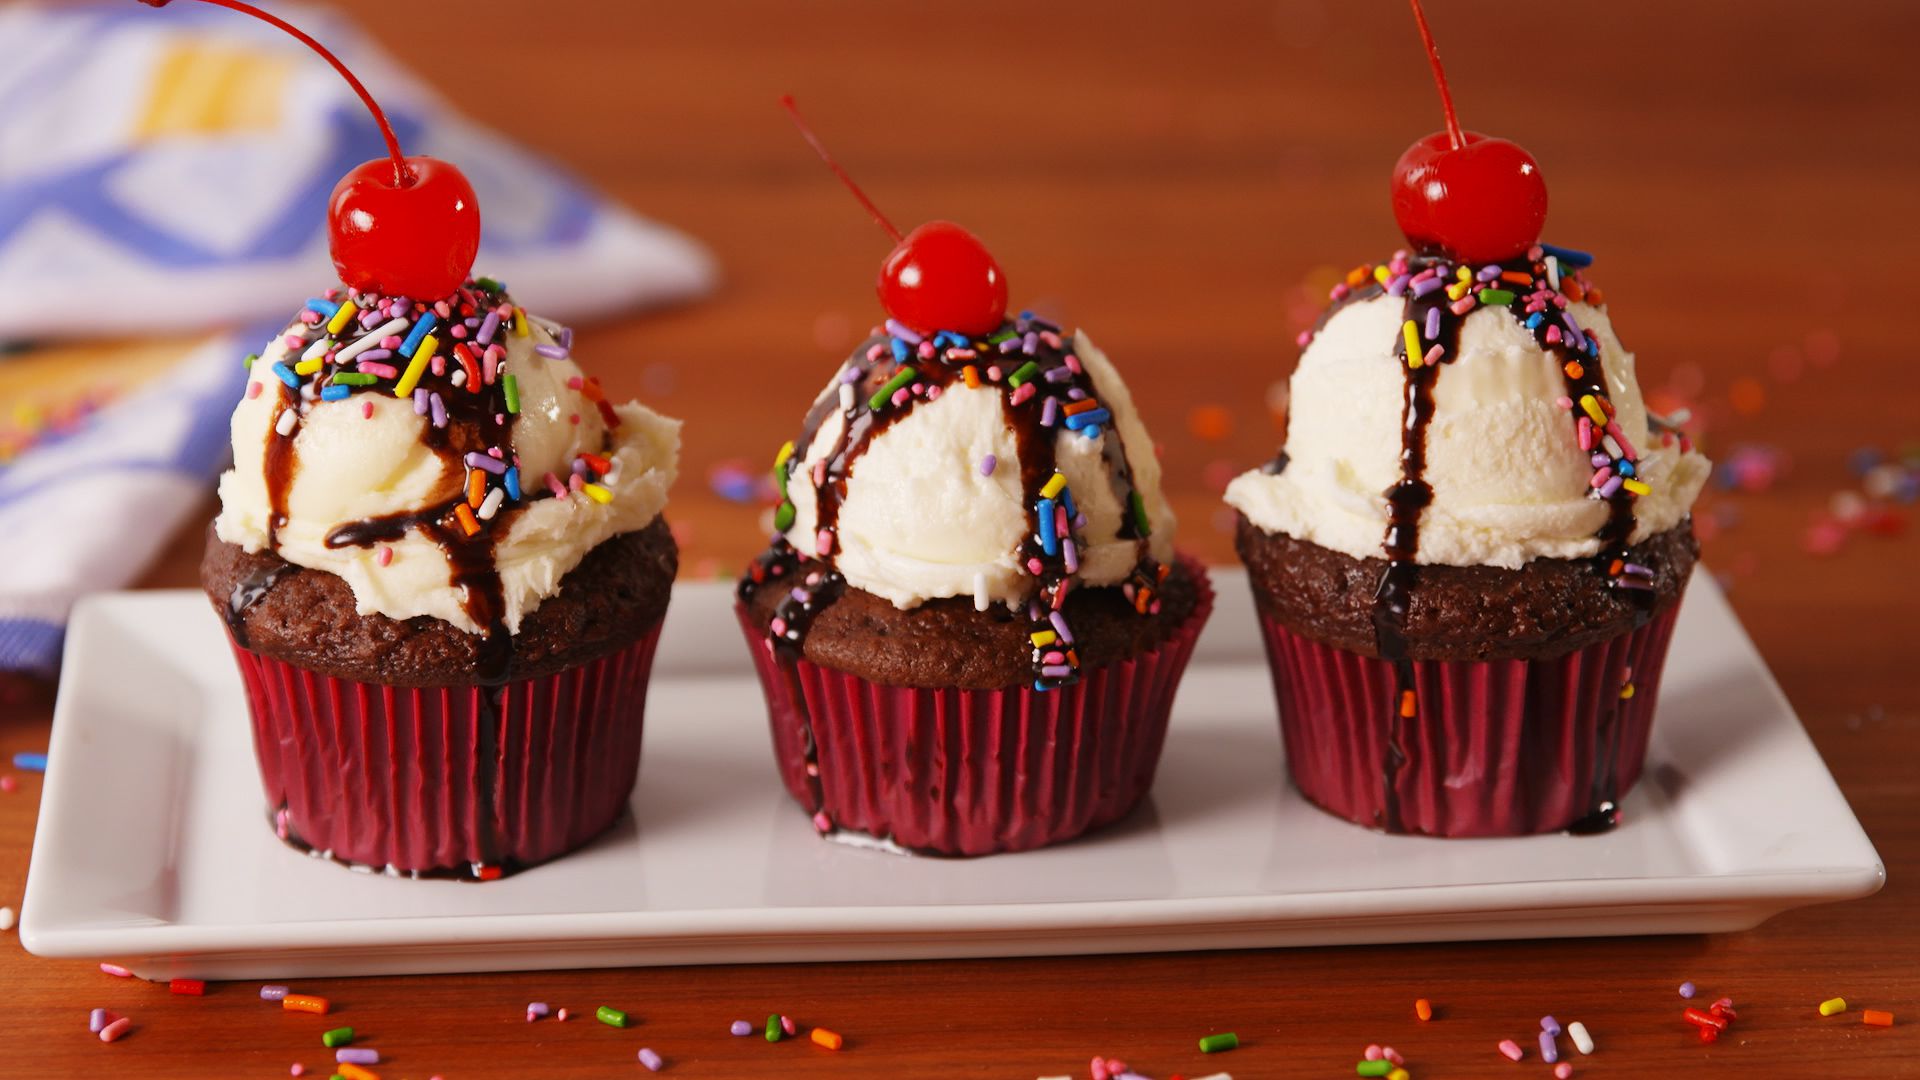 The Best Ice Cream Sundae Cupcake Recipe - How to Make Ice Cream ...